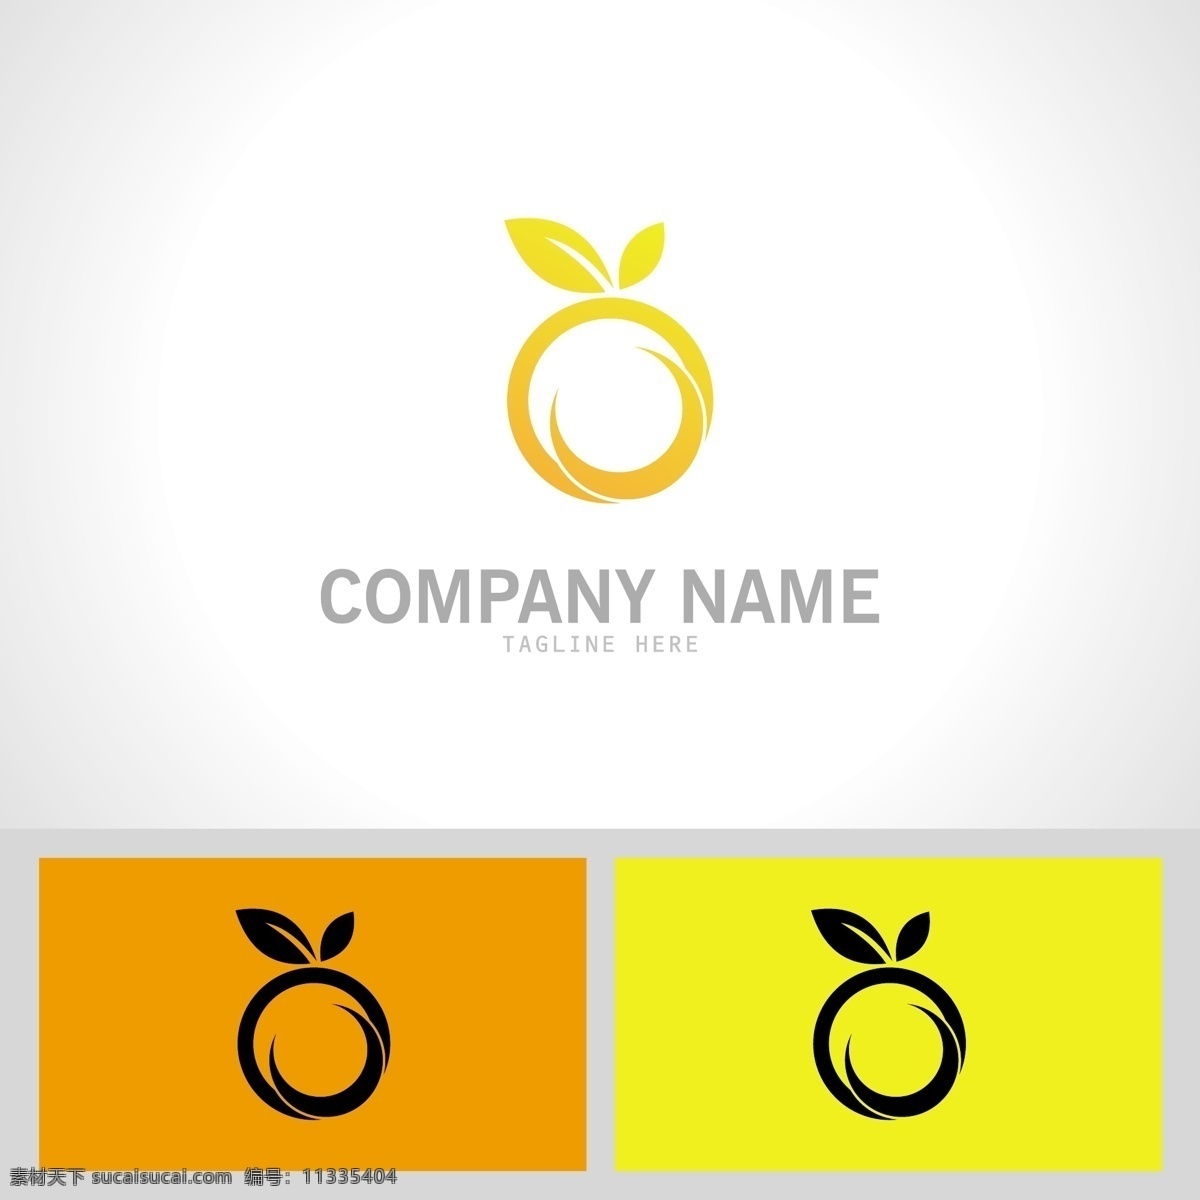 水果logo 企业logo 公司logo 金色logo 企业标识 行业logo 企业 创意 logo 创意设计 企业创意 设计企业 标志图标 标志